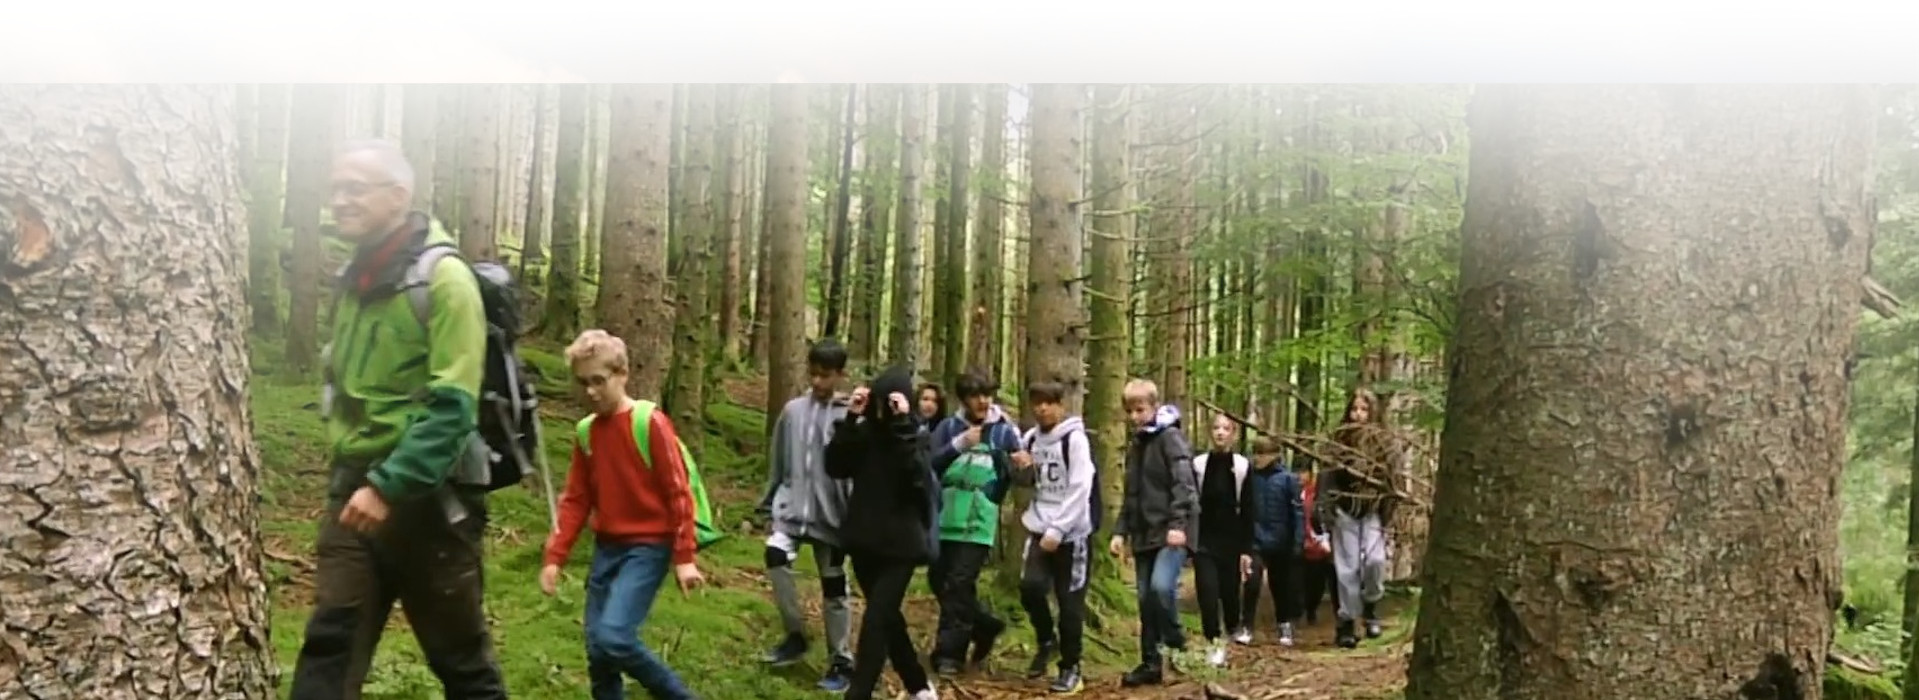 Schülergruppe im Wald © Volker Hirsch (Nationalpark Schwarzwald)